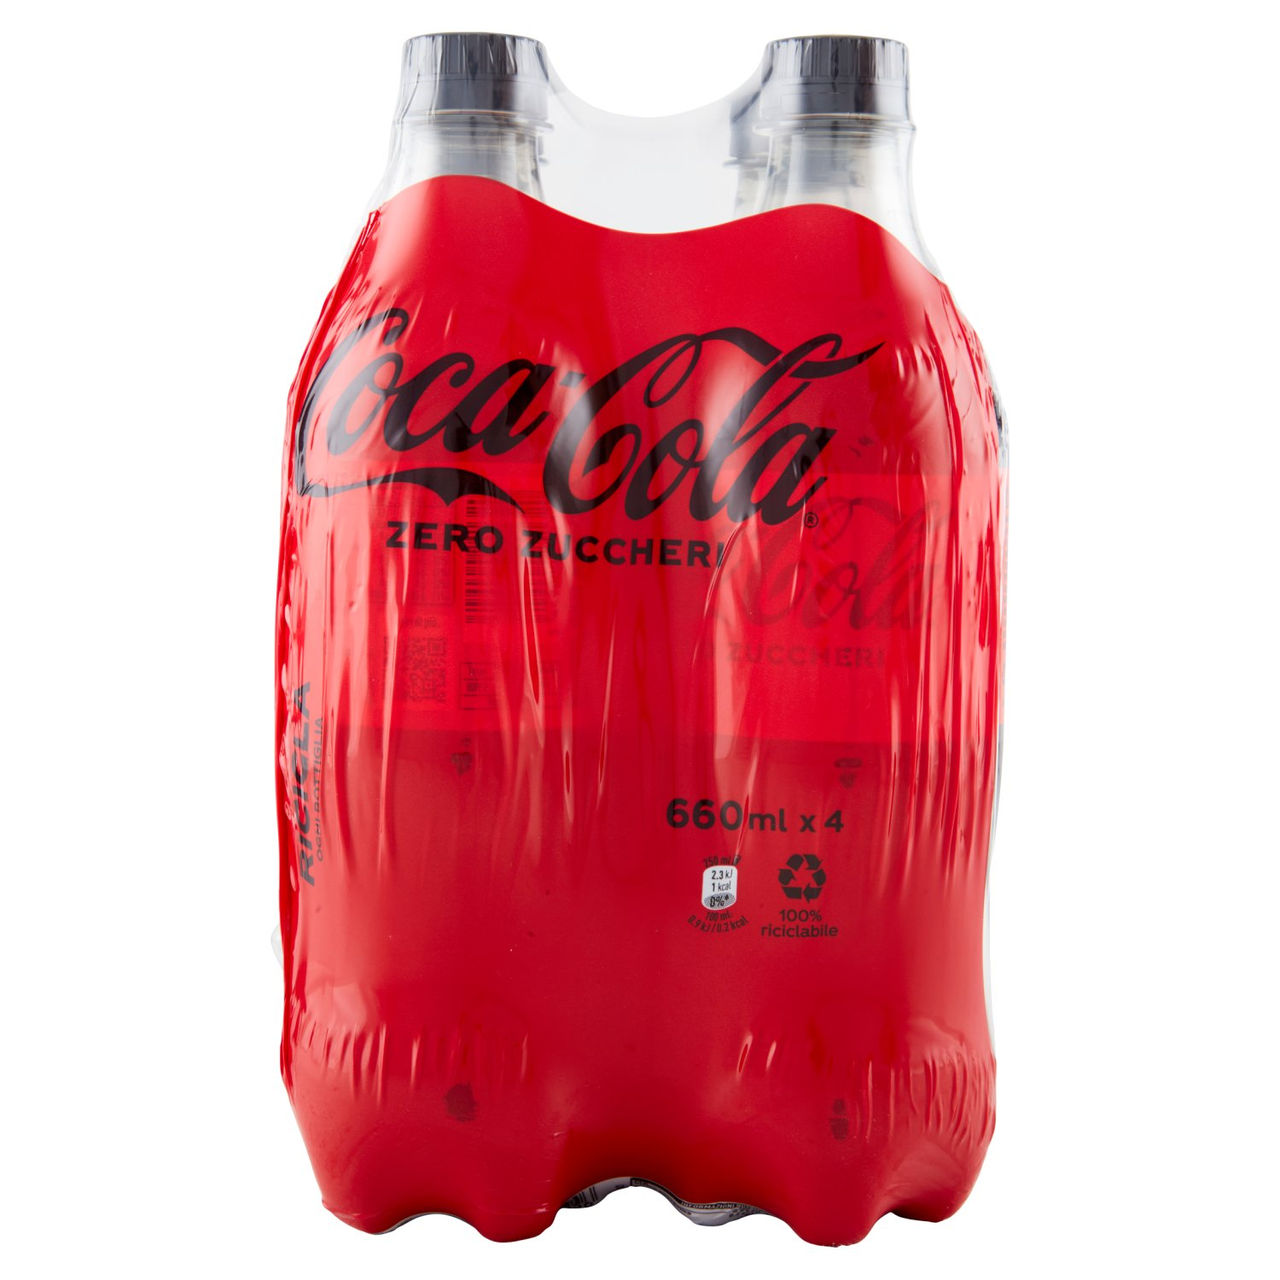 COCA-COLA Zero Zuccheri PET 4 x 660 ml